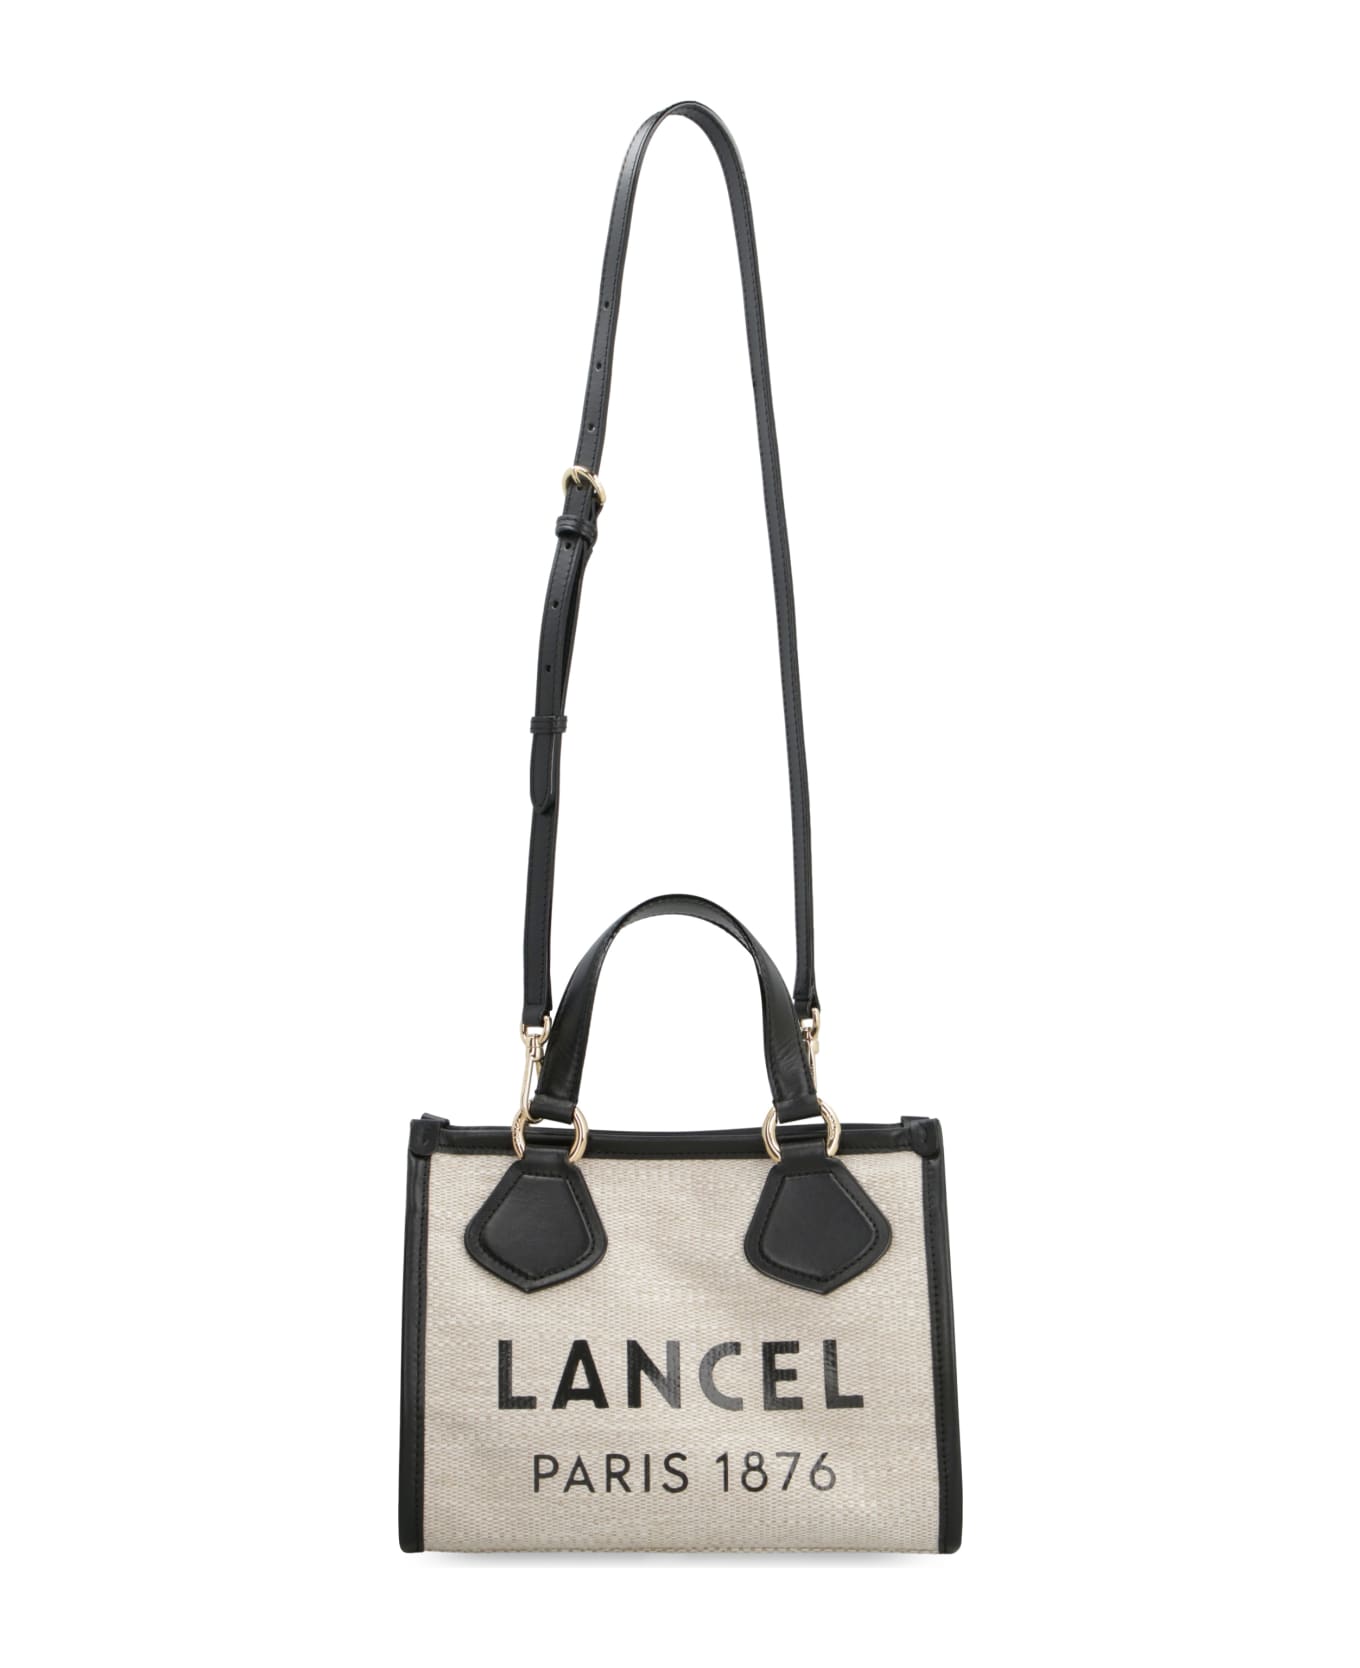 Lancel Summer Tote Bag - A Natural Black